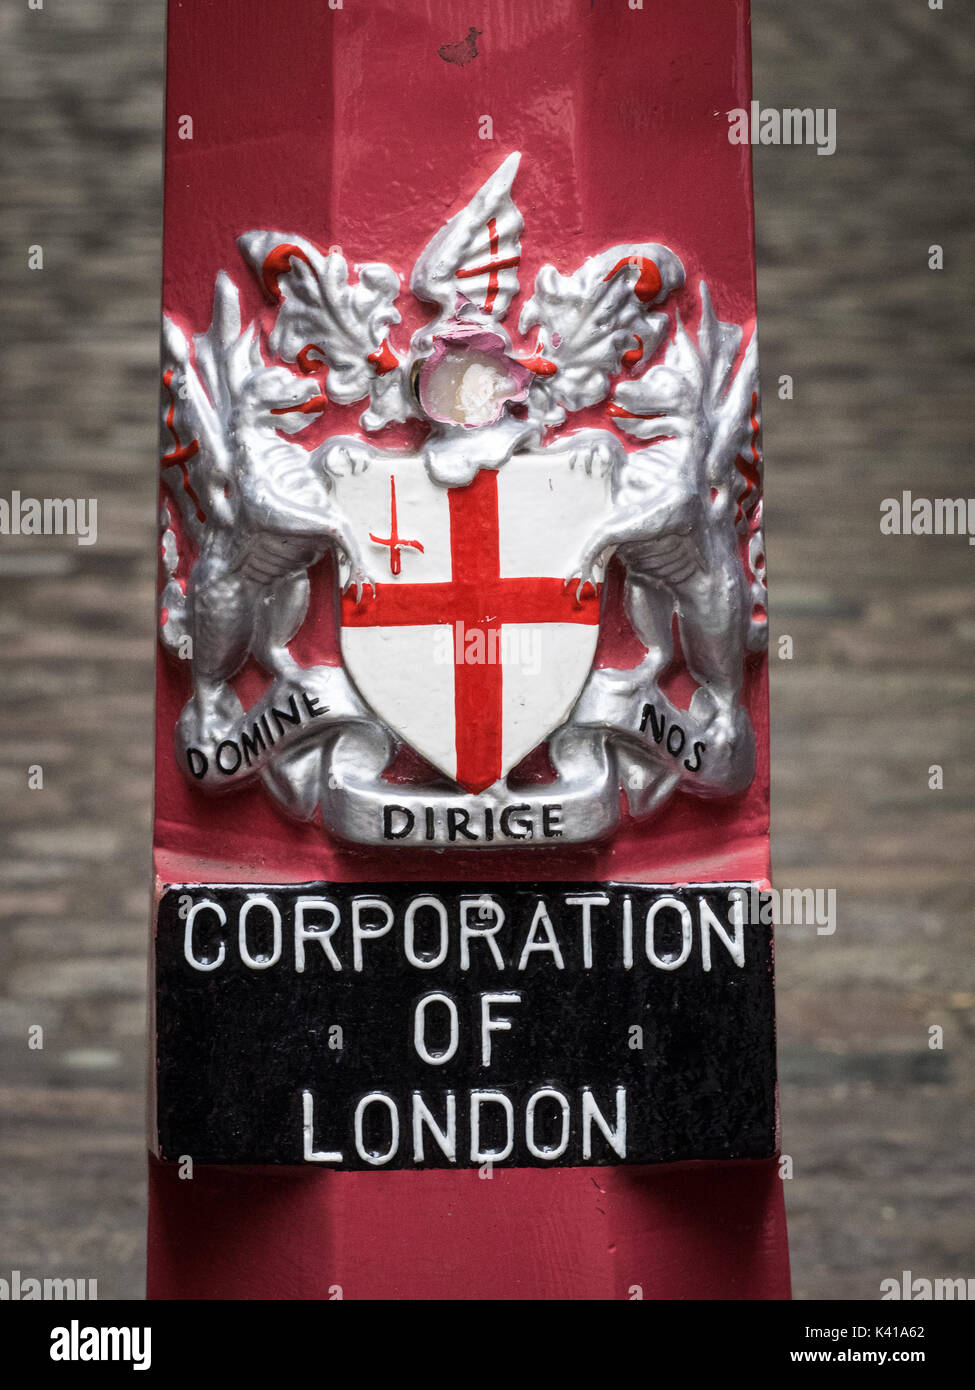 Corporation of London, City de Londres armoiries sur le mobilier urbain dans la ville de London financial district (km2) Banque D'Images